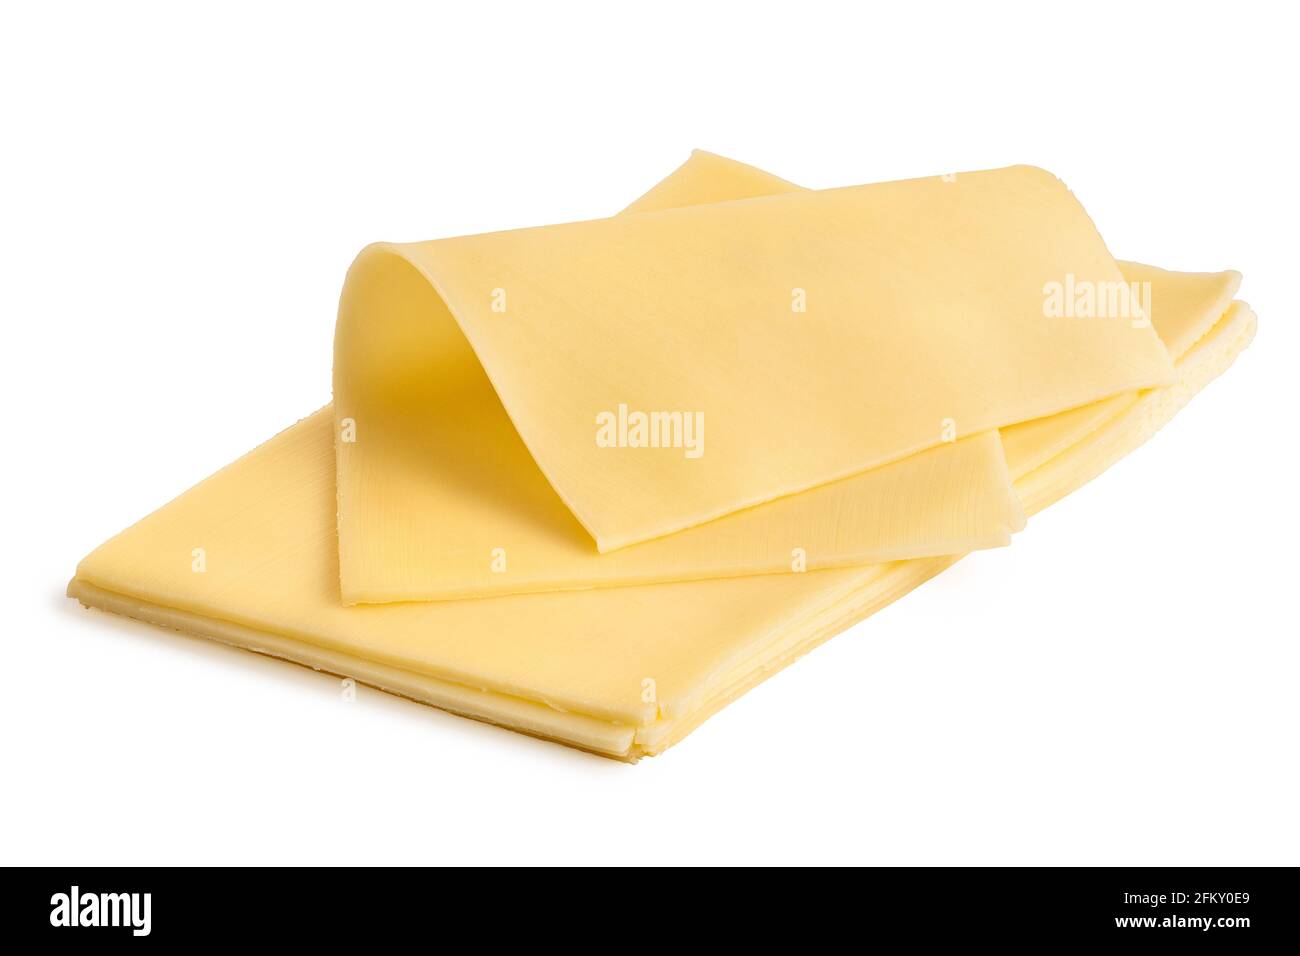 Rodaja delgada doblada de queso amarillo encima de una pila de rodajas de queso amarillo. Foto de stock